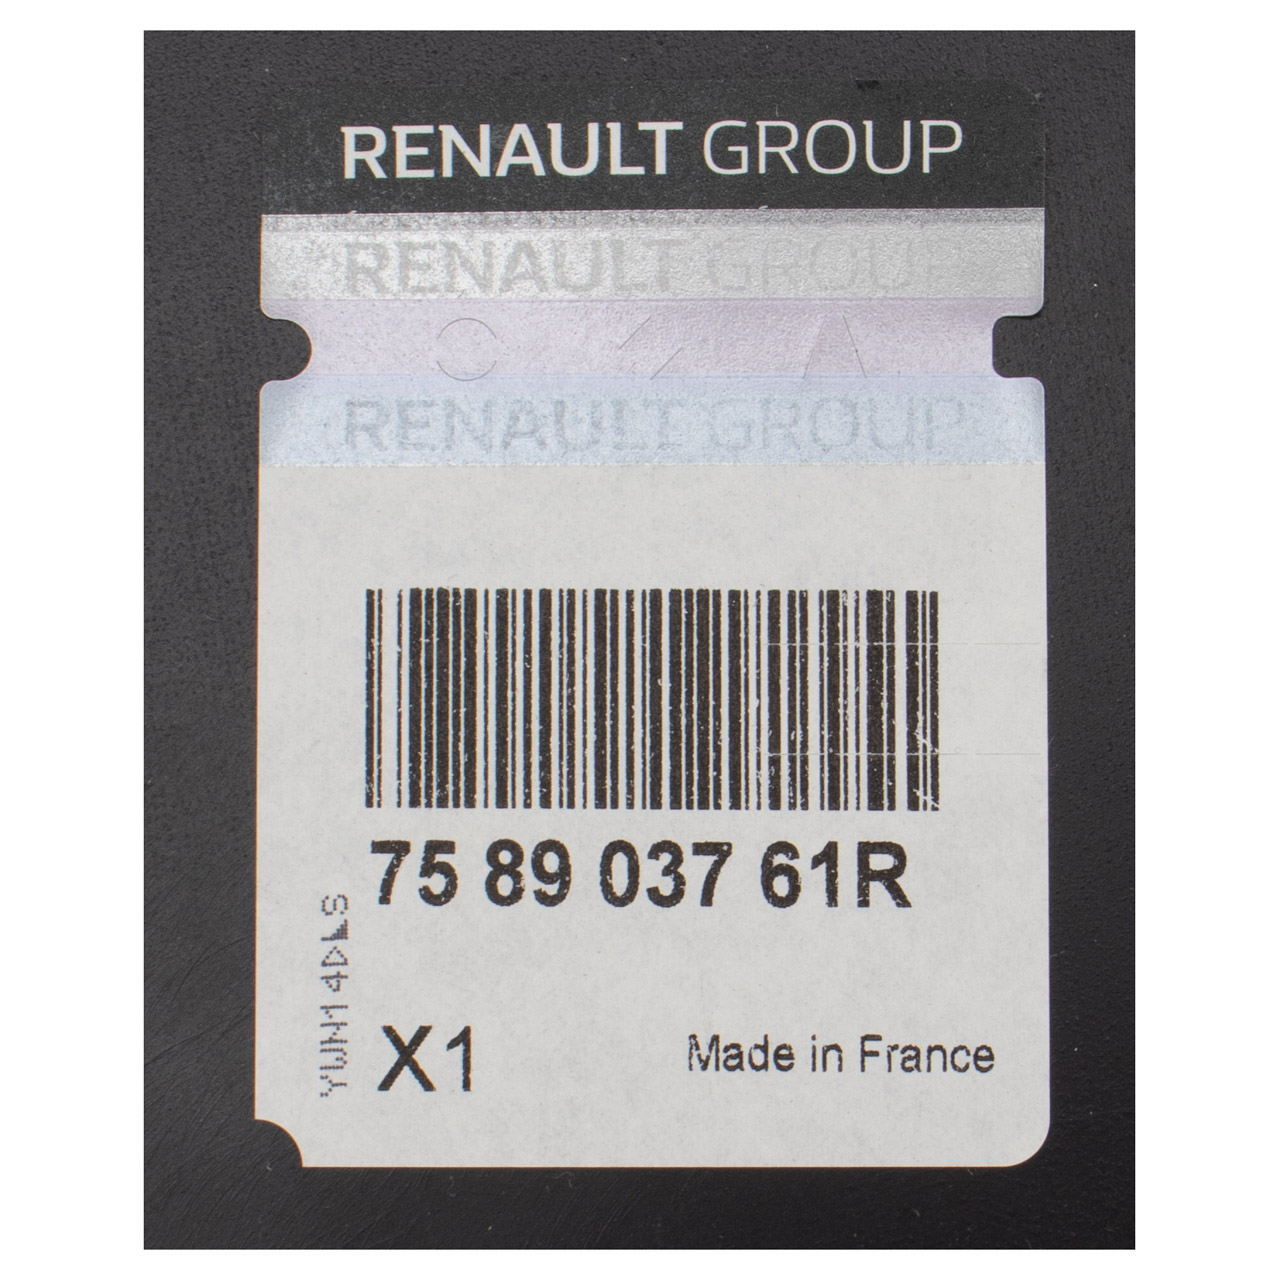 ORIGINAL Renault Unterfahrschutz Unterbodenschutz Motor Abdeckung Master 3 758903761R